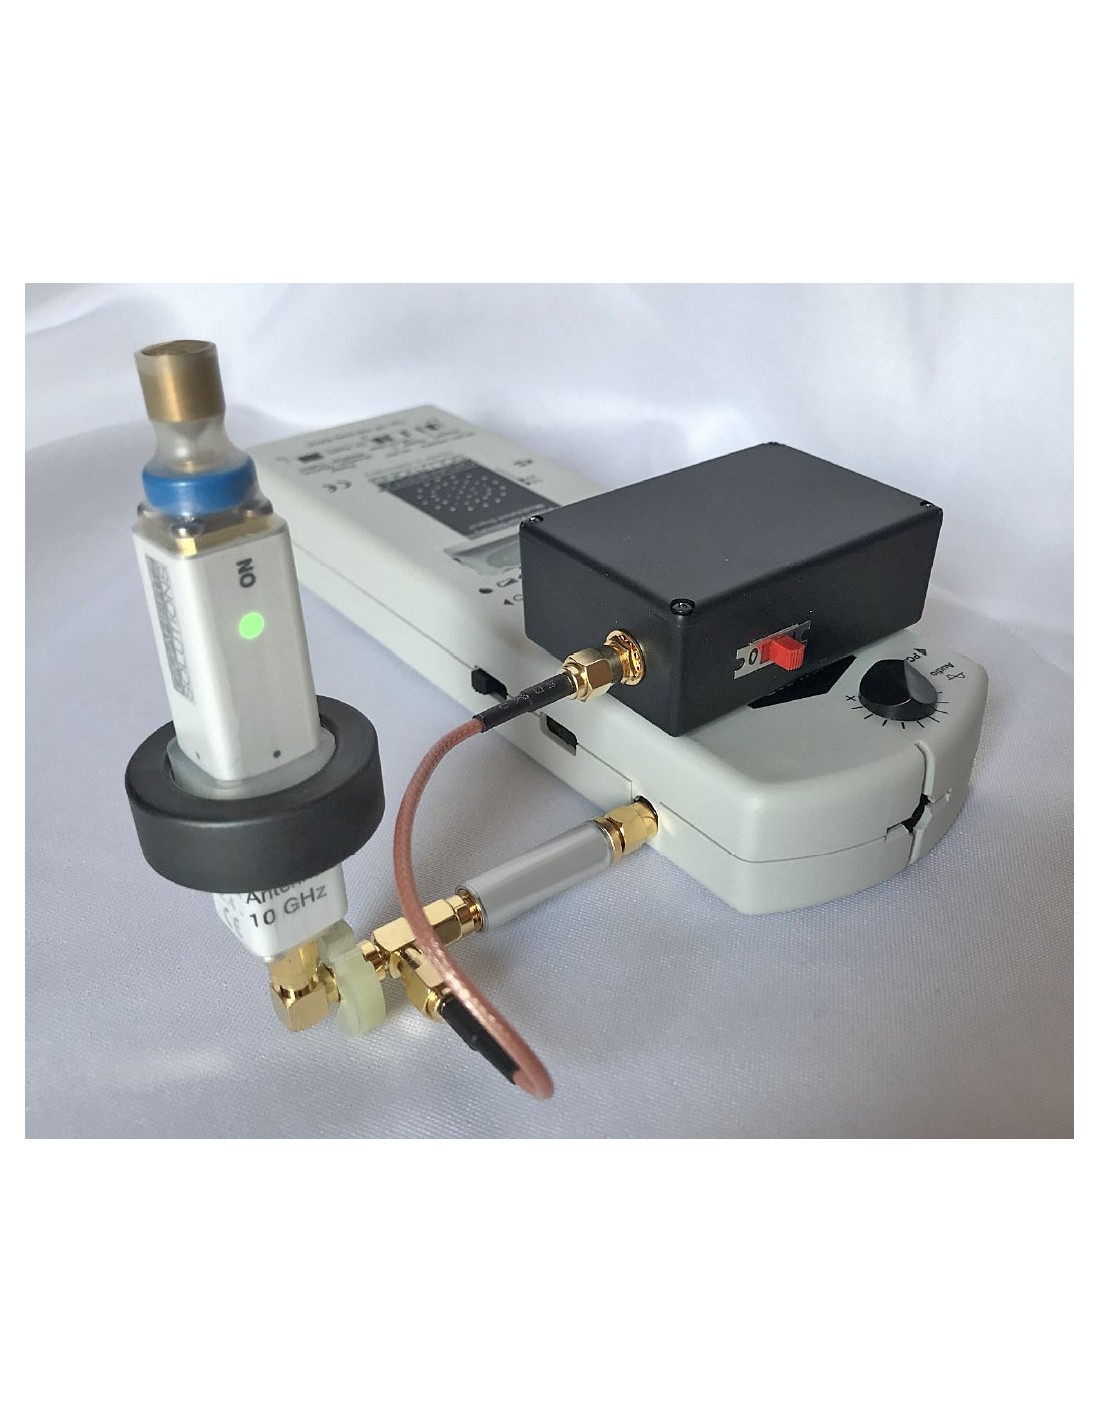 Kit boitier alimentation 9V pour filtre SMA sur HFW59D ou HFW35C